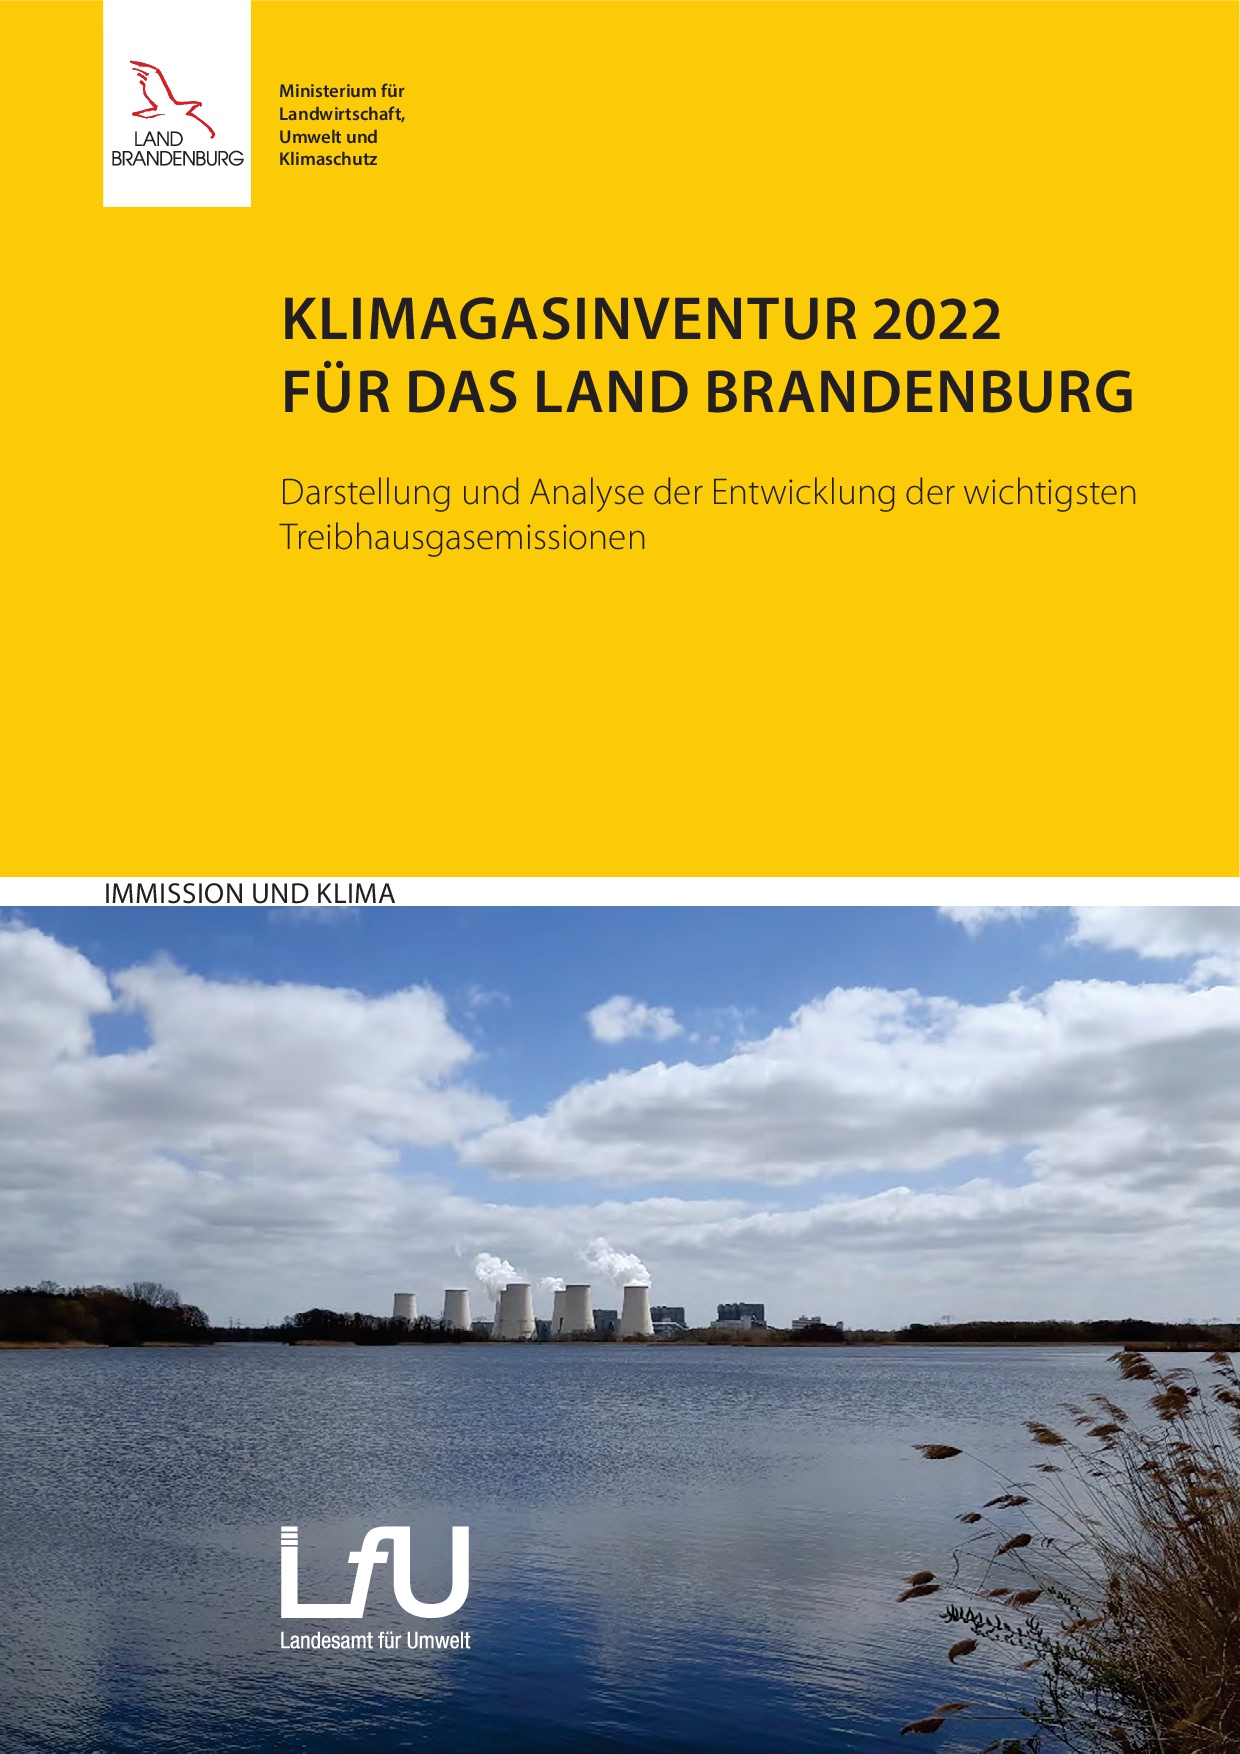 Bild vergrößern (Bild: Klimagasinventur 2022 für das Land Brandenburg )